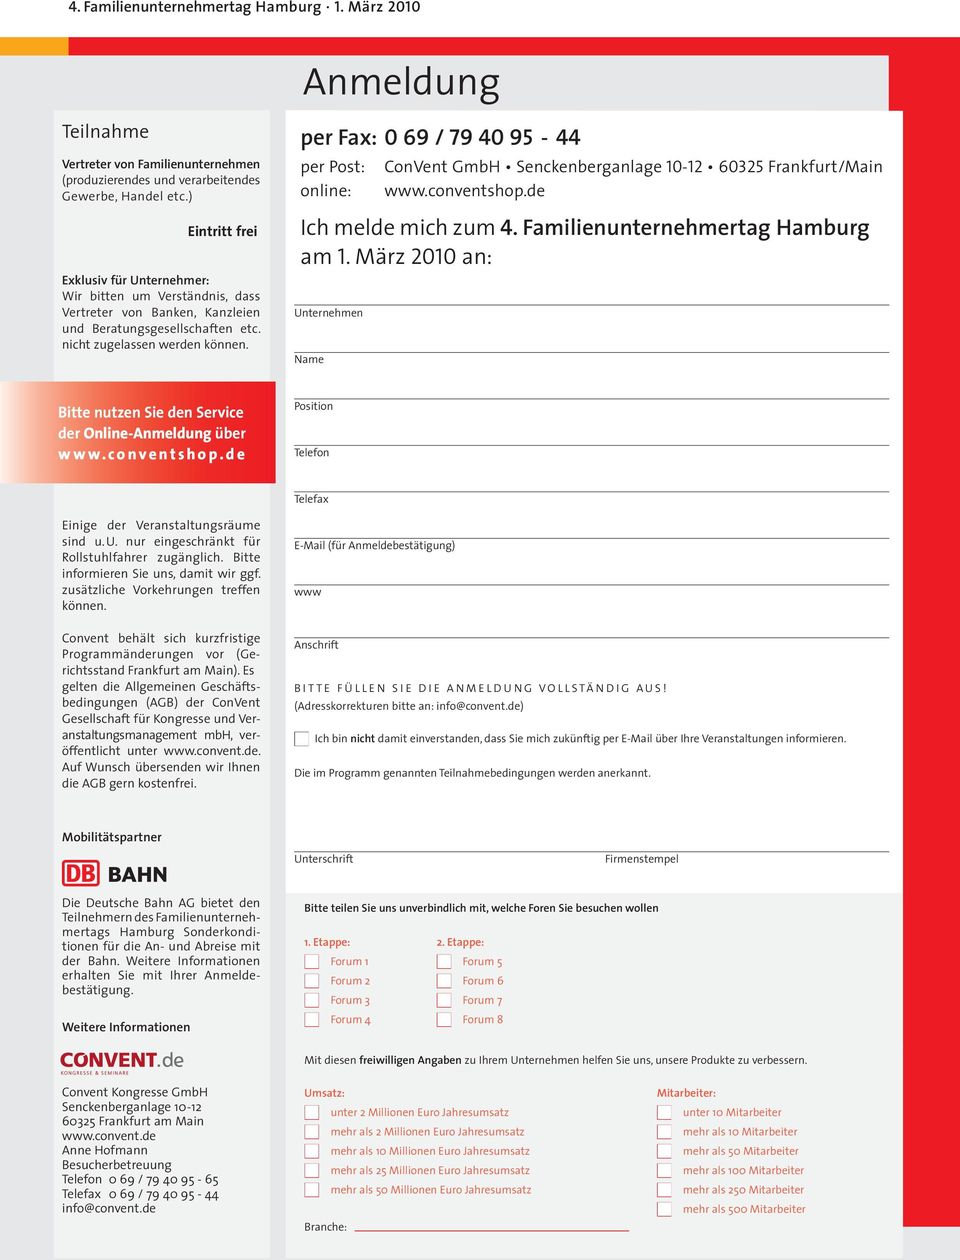 per Fax: 0 69 / 79 40 95-44 per Post: online: ConVent GmbH Senckenberganlage 10-12 60325 Frankfurt/Main www.conventshop.de Ich melde mich zum 4. Familienunternehmertag Hamburg am 1.